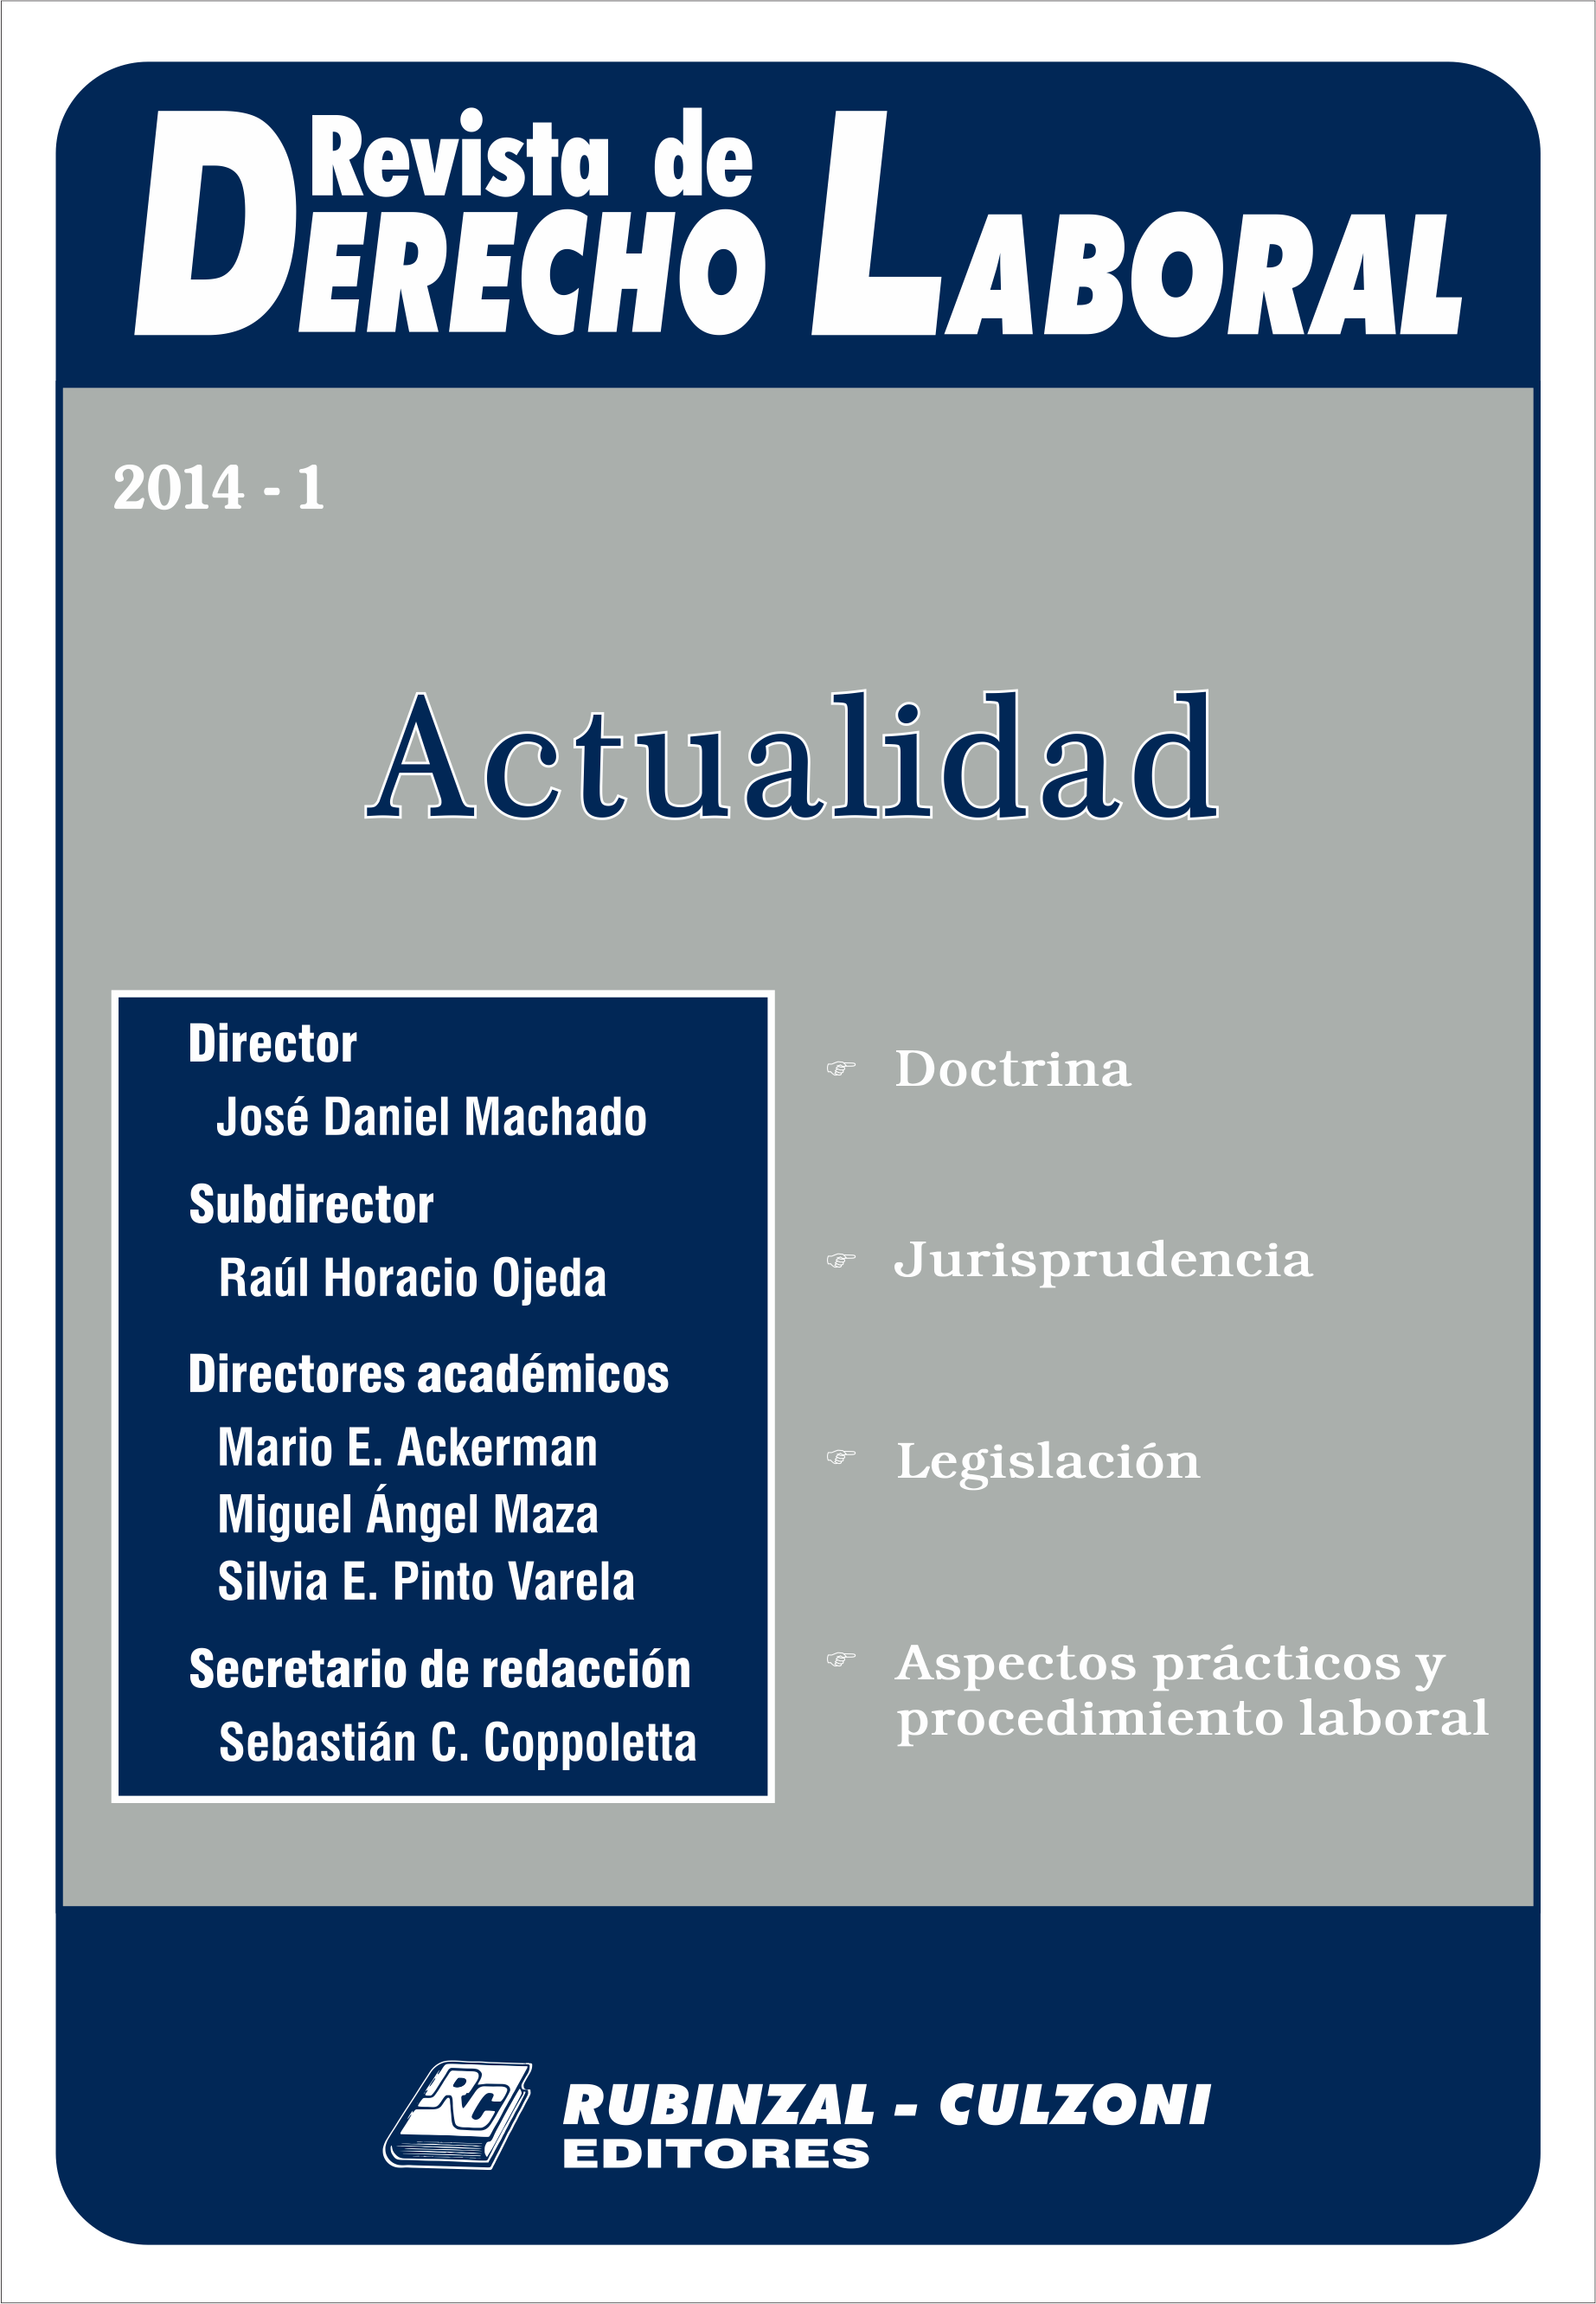 Revista de Derecho Laboral Actualidad - Año 2014 - 1.